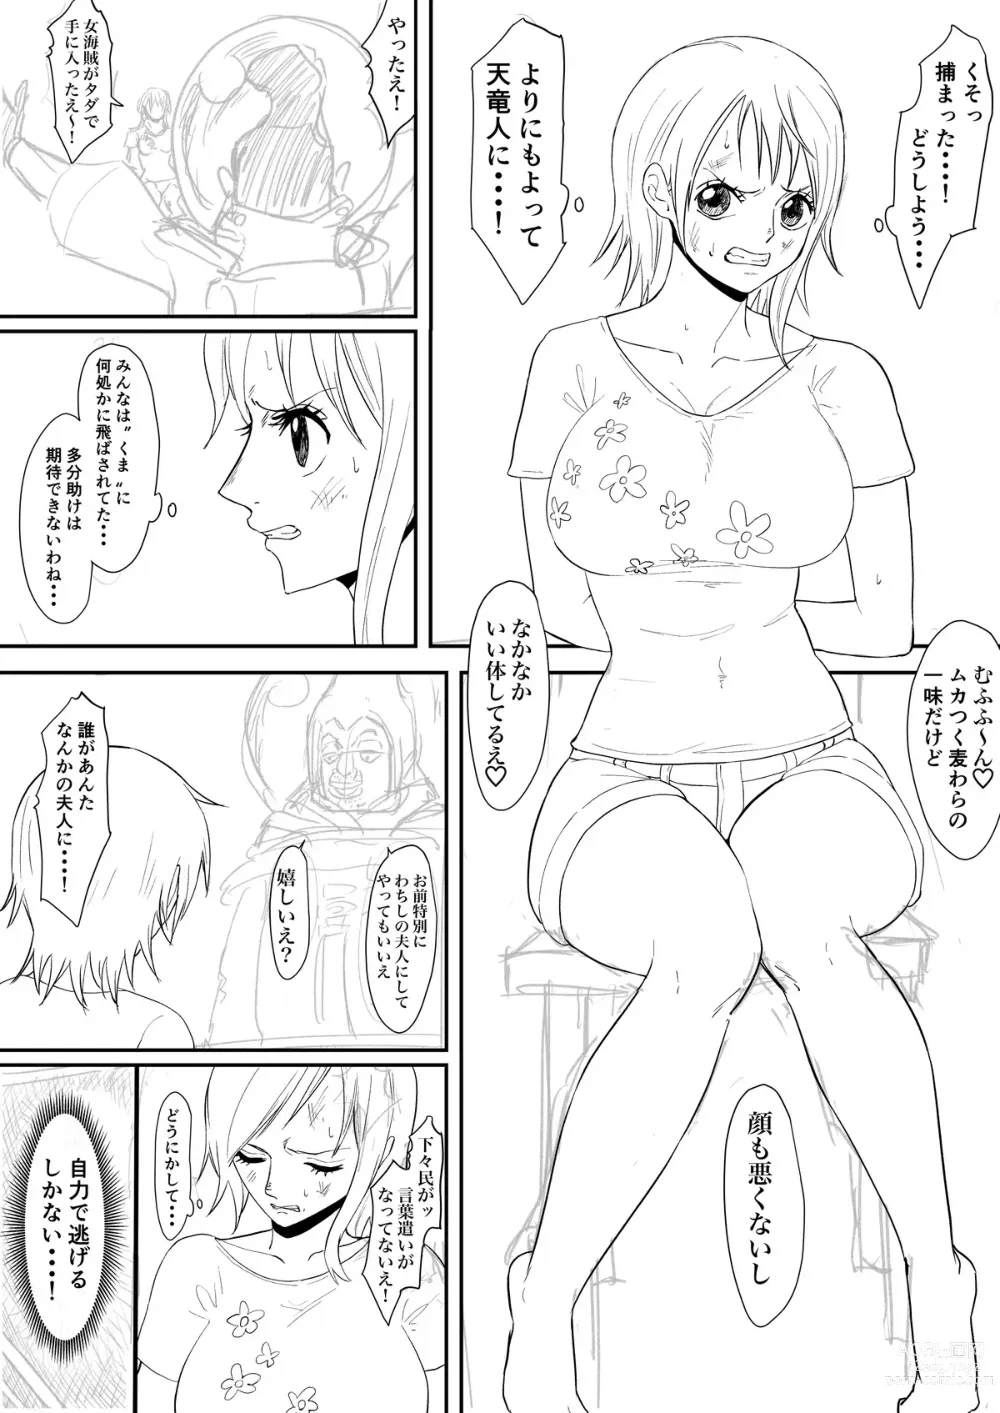 Page 3 of doujinshi Nami Manga + various bonus